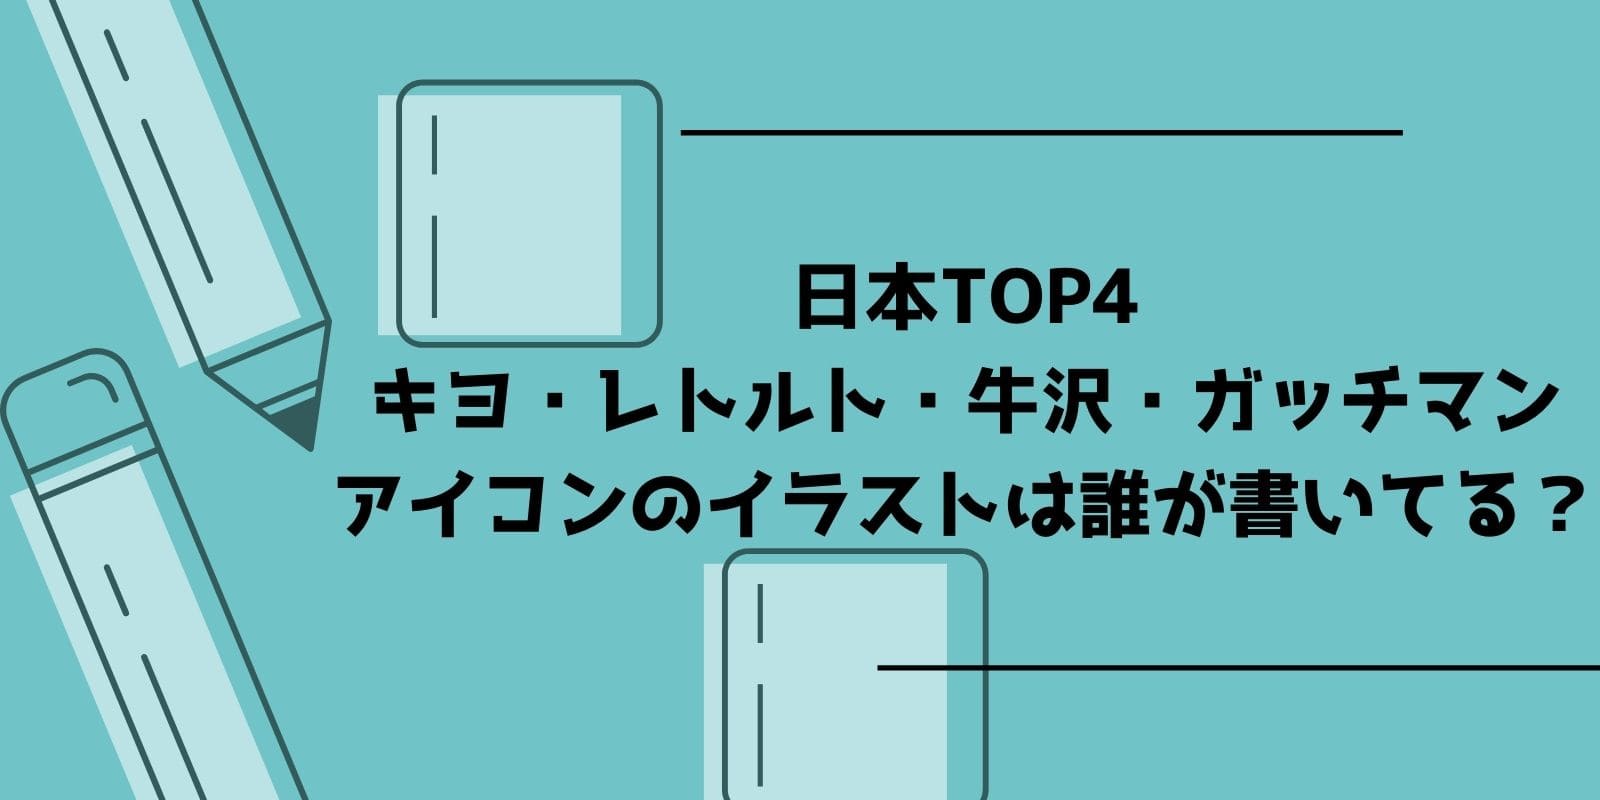 日本top4 キヨ レトルト 牛沢 ガッチマン のアイコンのイラストは誰が書いてる Gamers